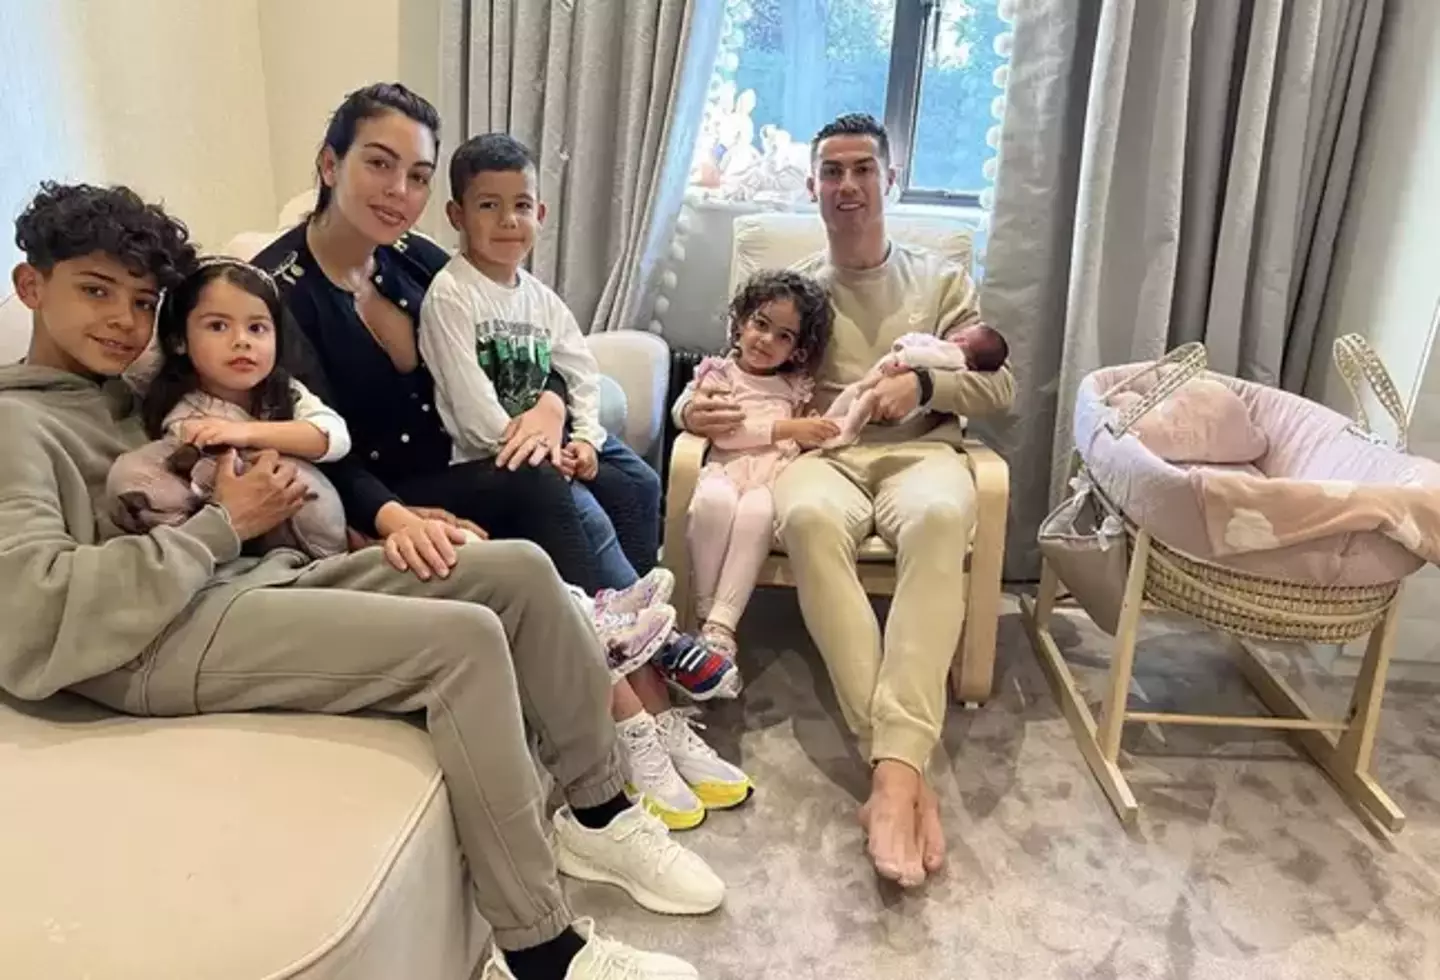 The Ronaldo family.